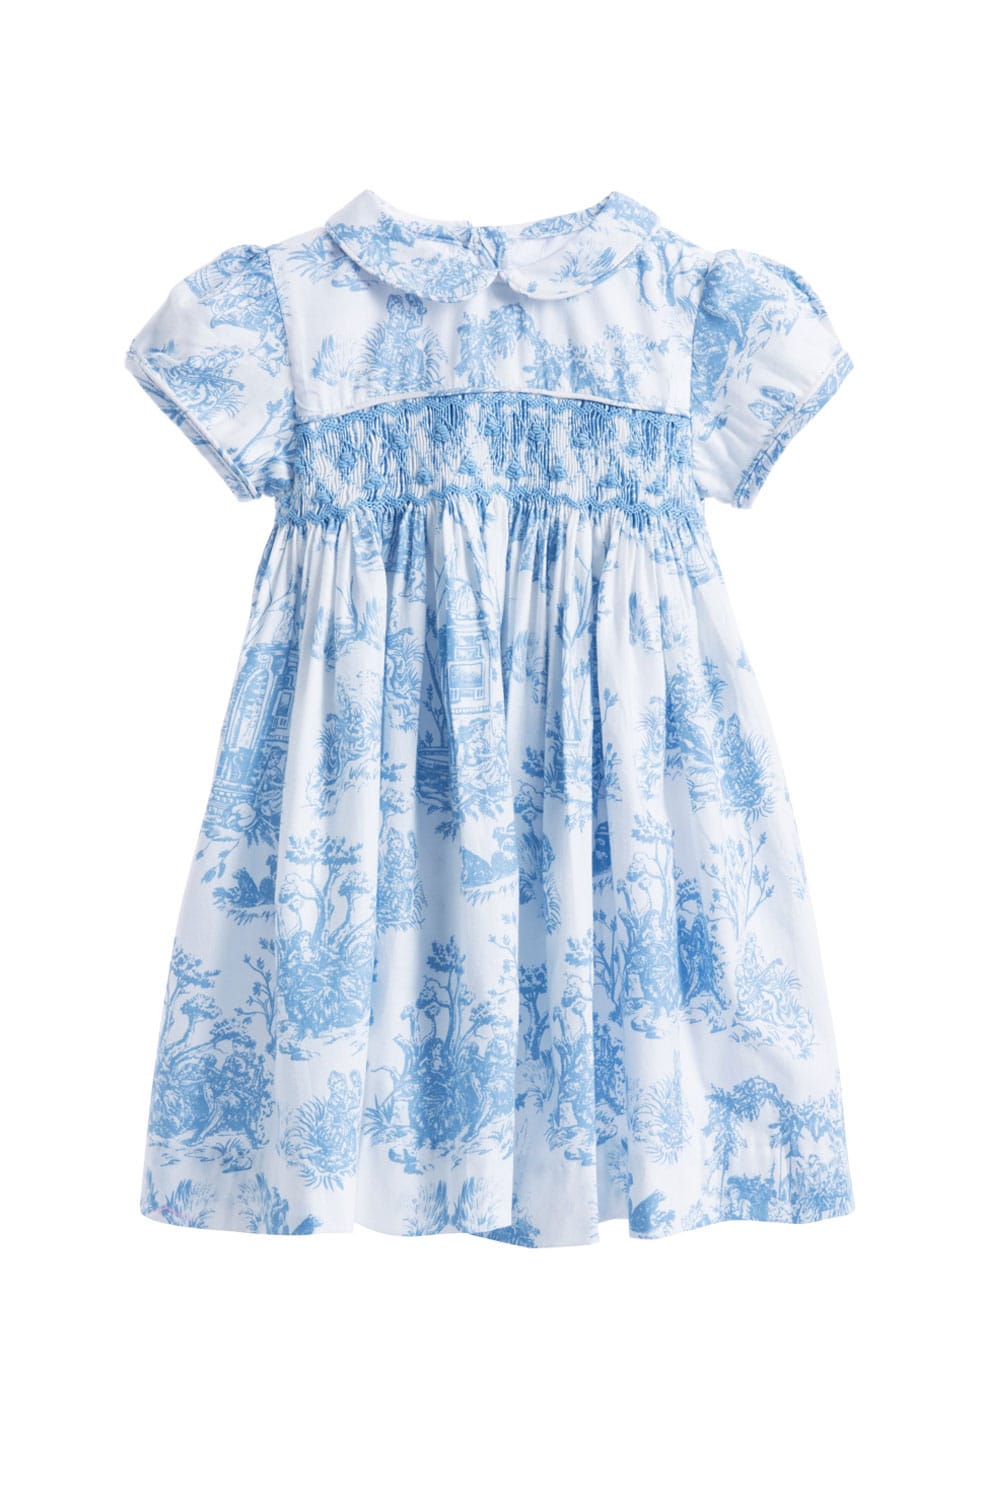 Blue Toile de Jouy Hand Smocked Girls Dress | Theodora - Annafie